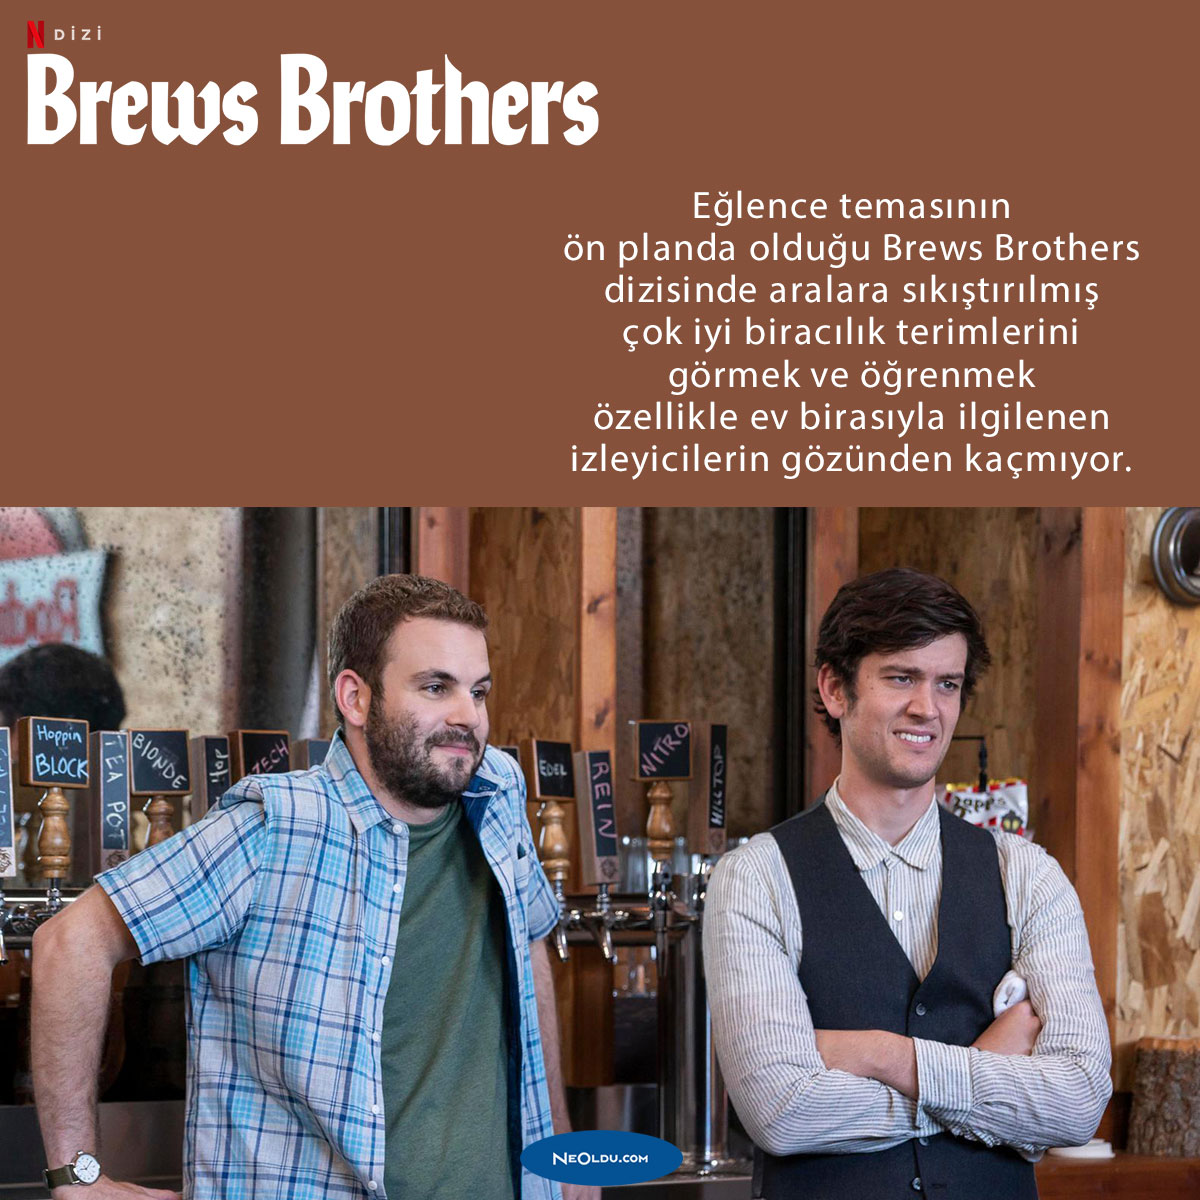 brews-brothers-dizisi-hakkinda-bilgi.jpg